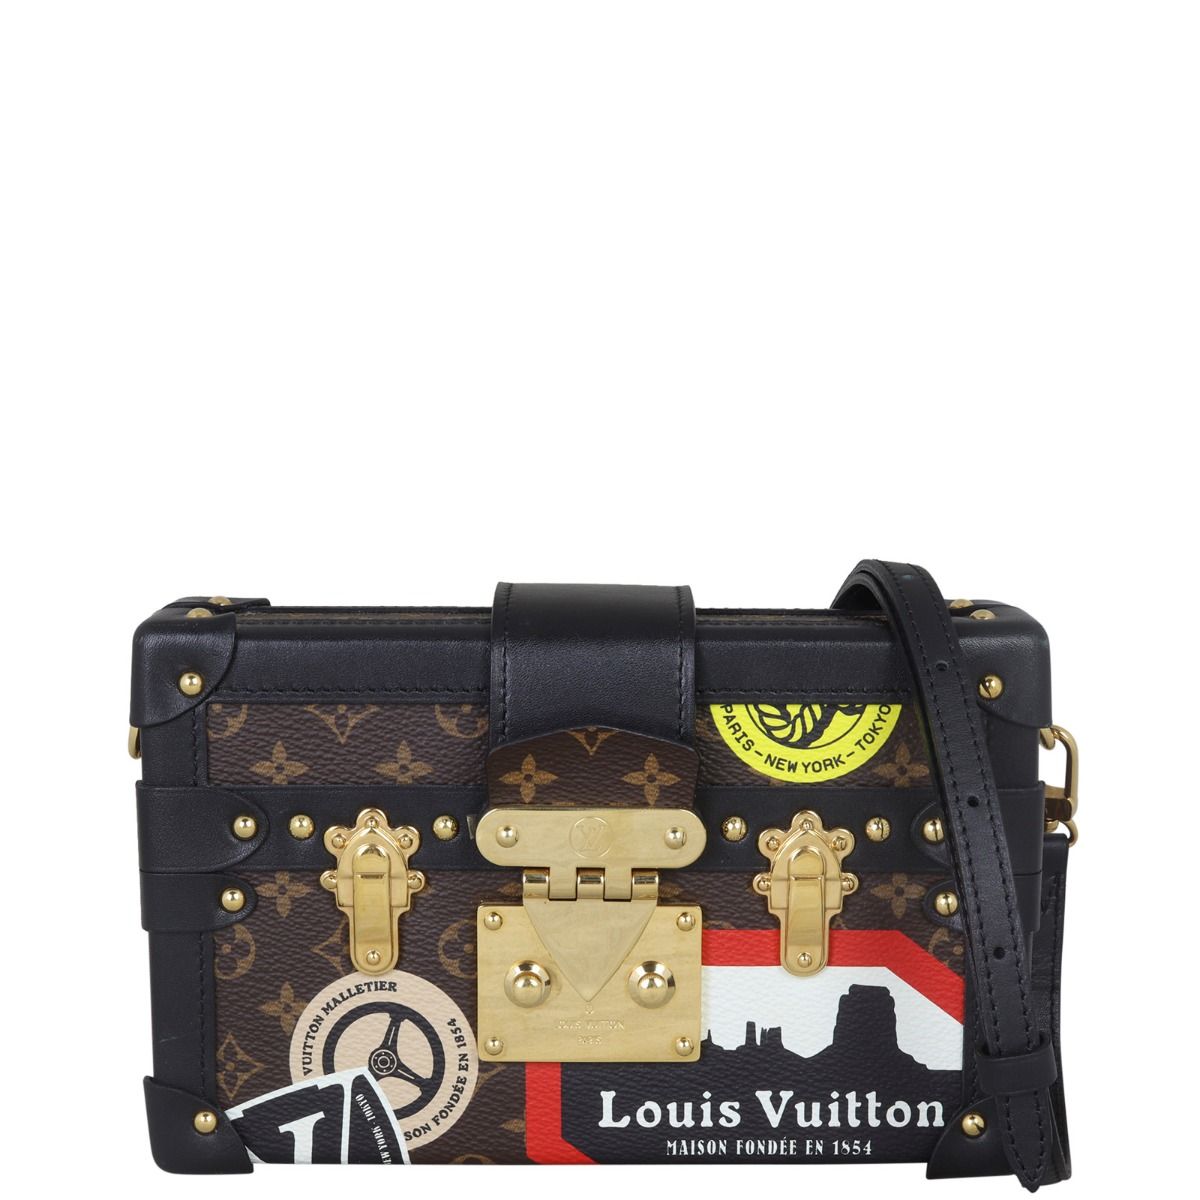 Louis Vuitton Limited Edition Since 1854 Monogram Petite Malle bag Louis  Vuitton